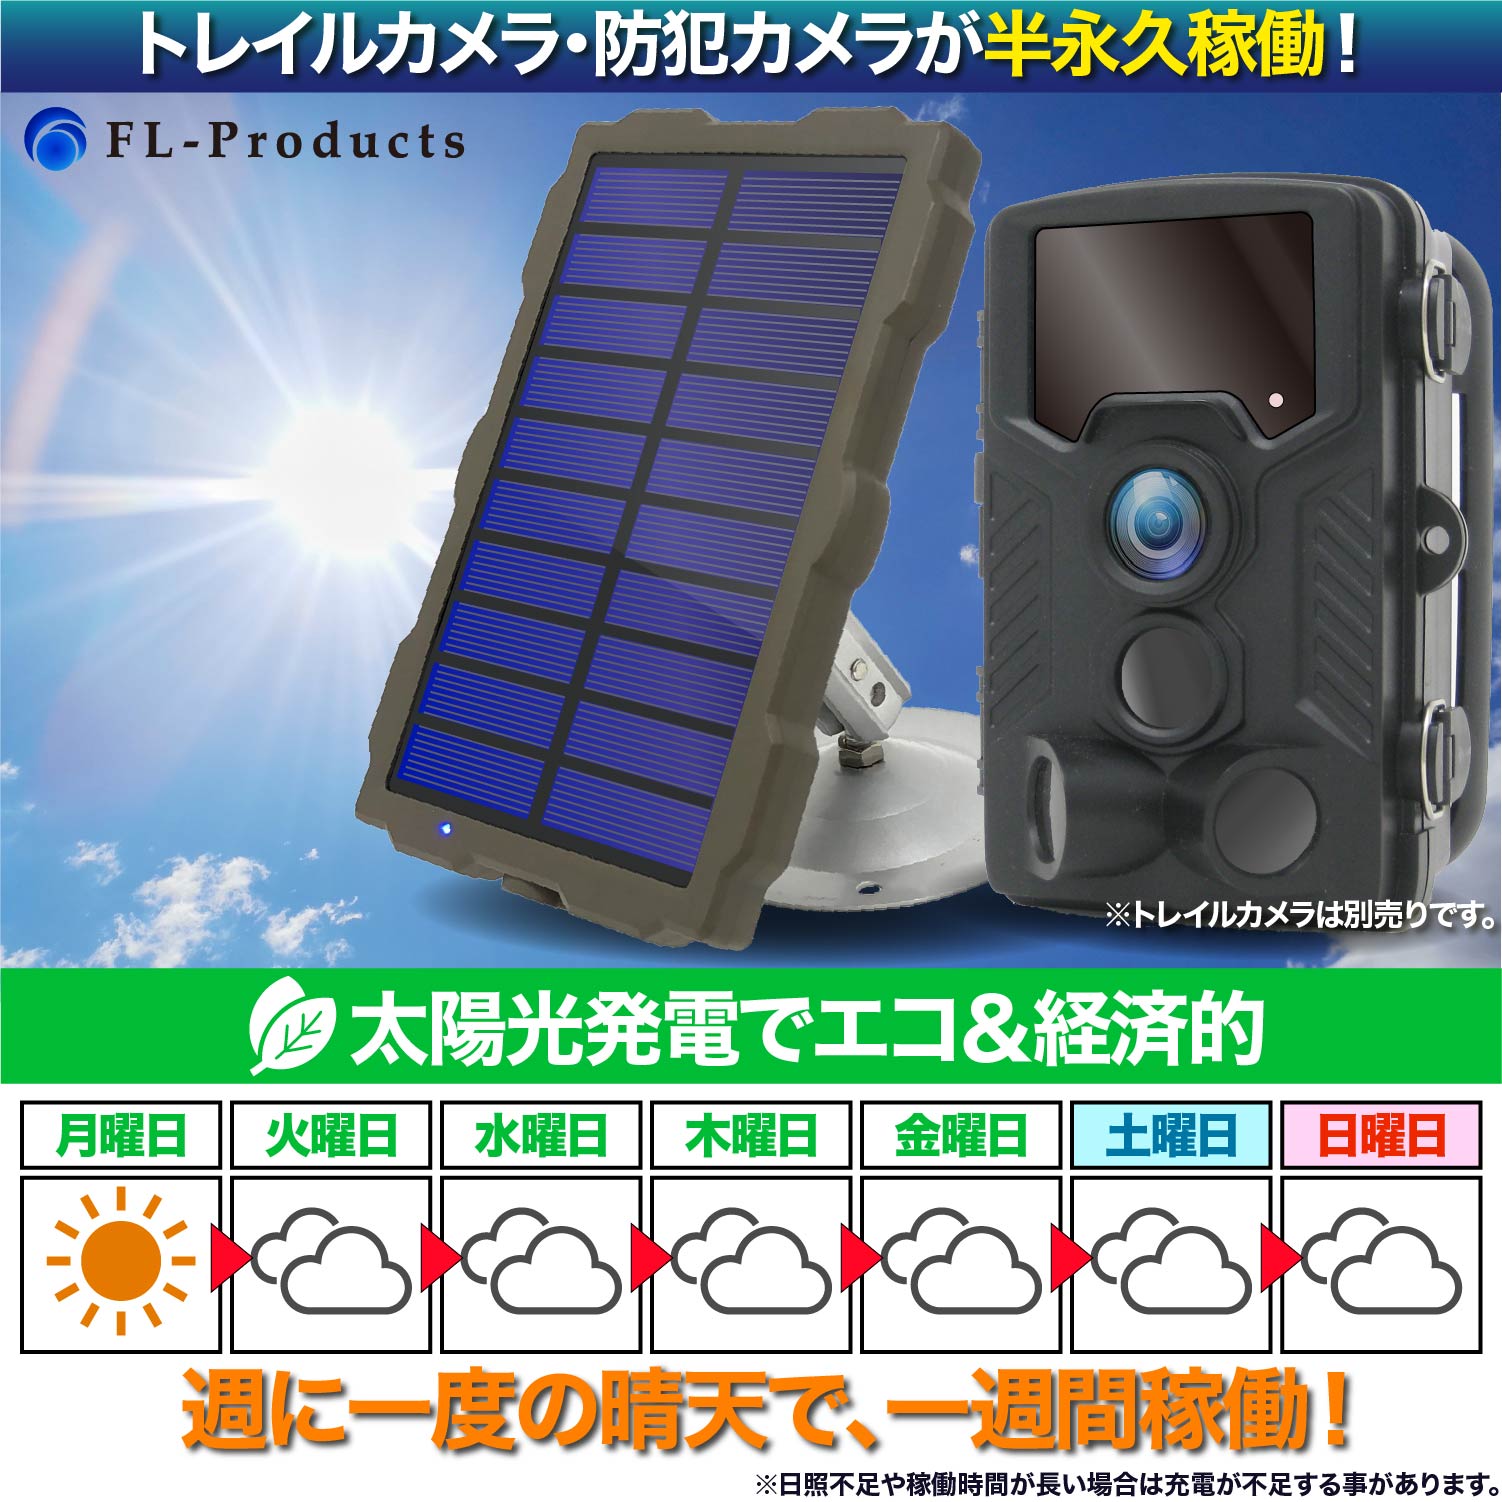 トレイルカメラ 防犯カメラ 用 ソーラーパネル バッテリー 太陽光発電